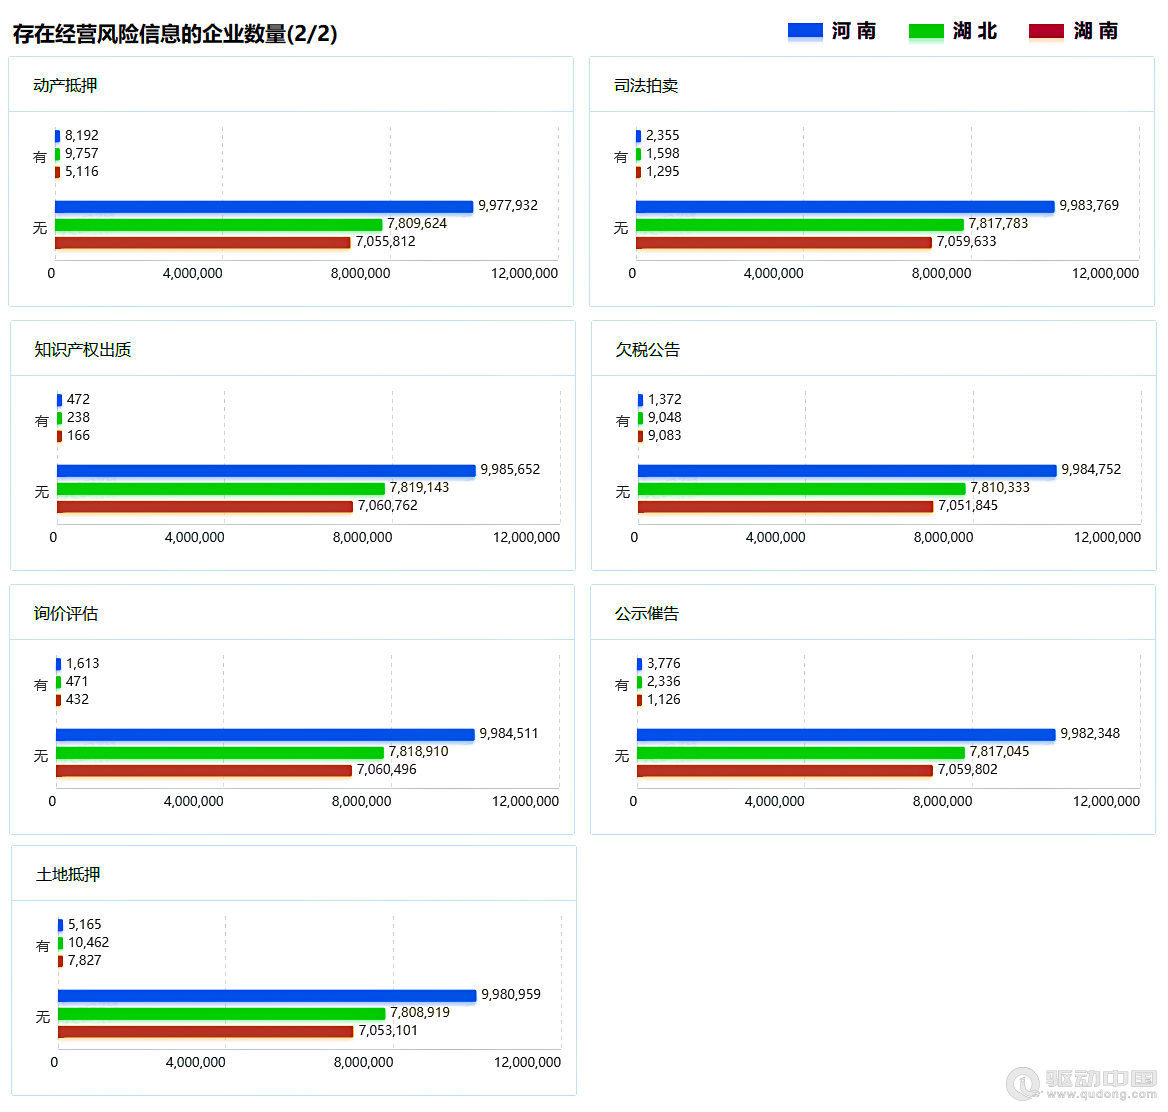 2023年河南、湖北、湖南三省企业宏观统计数据对比报告(图15)